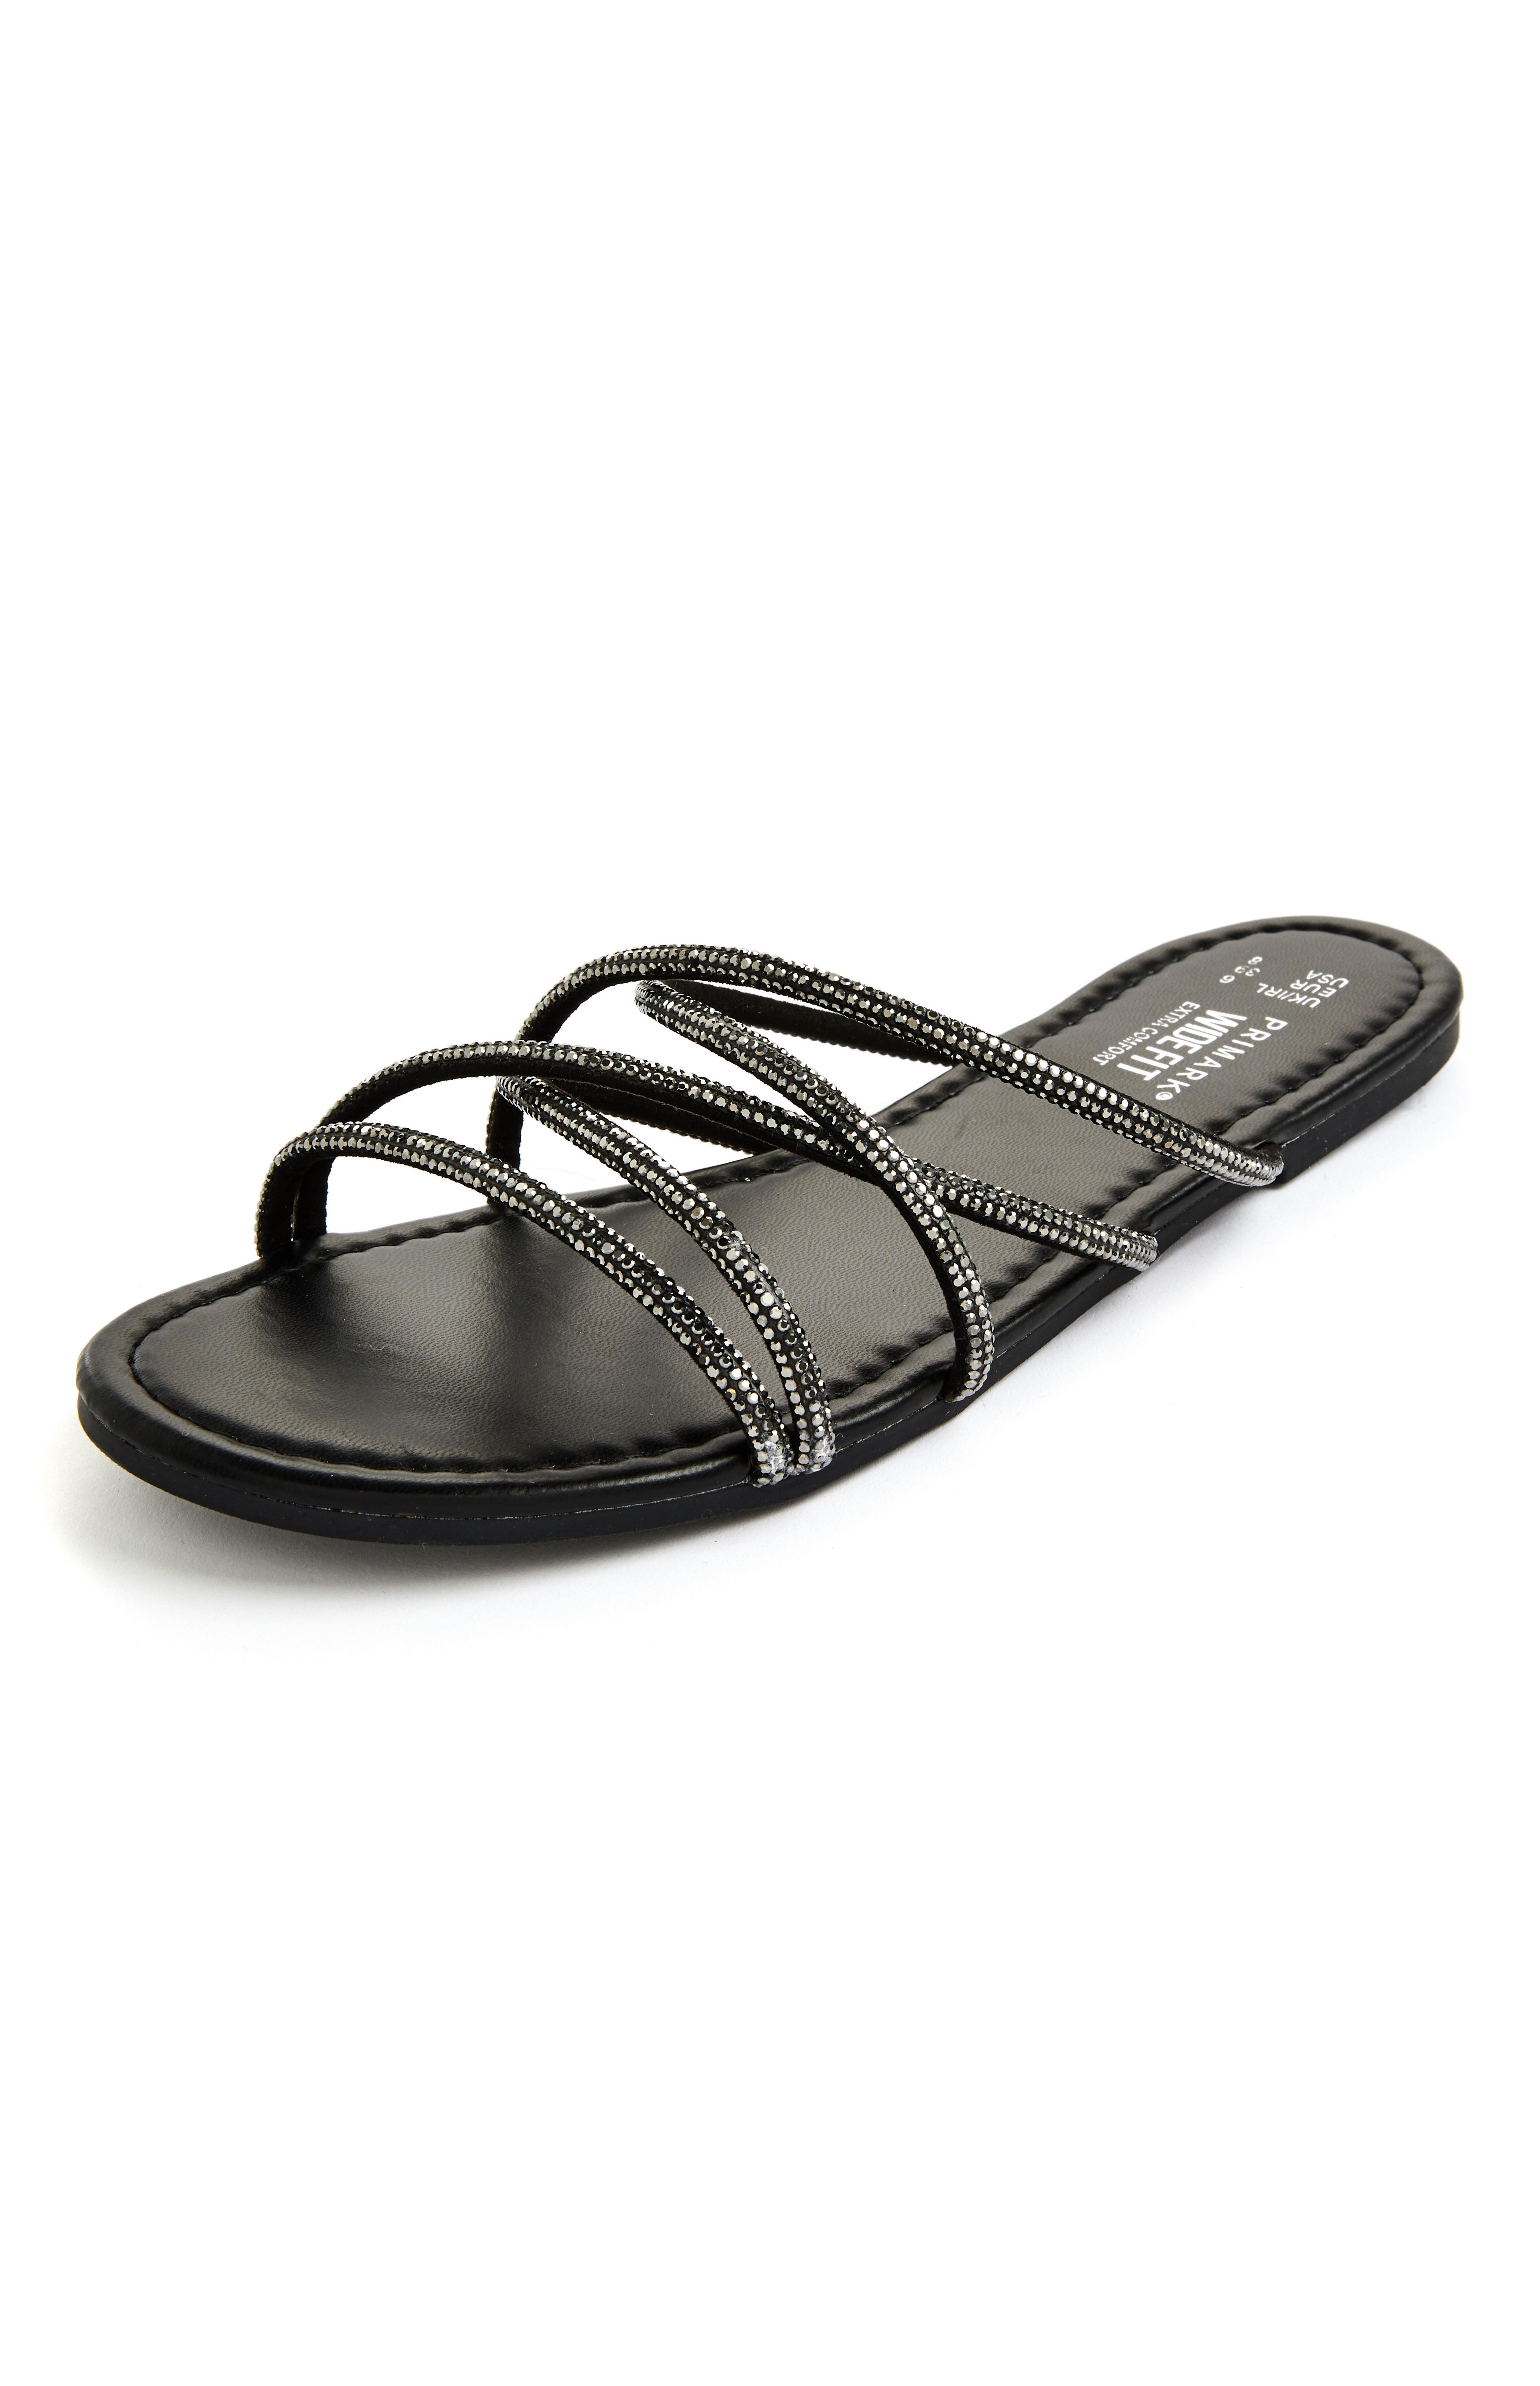 Sandalias planas negras tiras con strass | Sandalias, chanclas y babuchas para mujer | Zapatos y botas para mujer | línea de moda femenina | los productos Primark | España